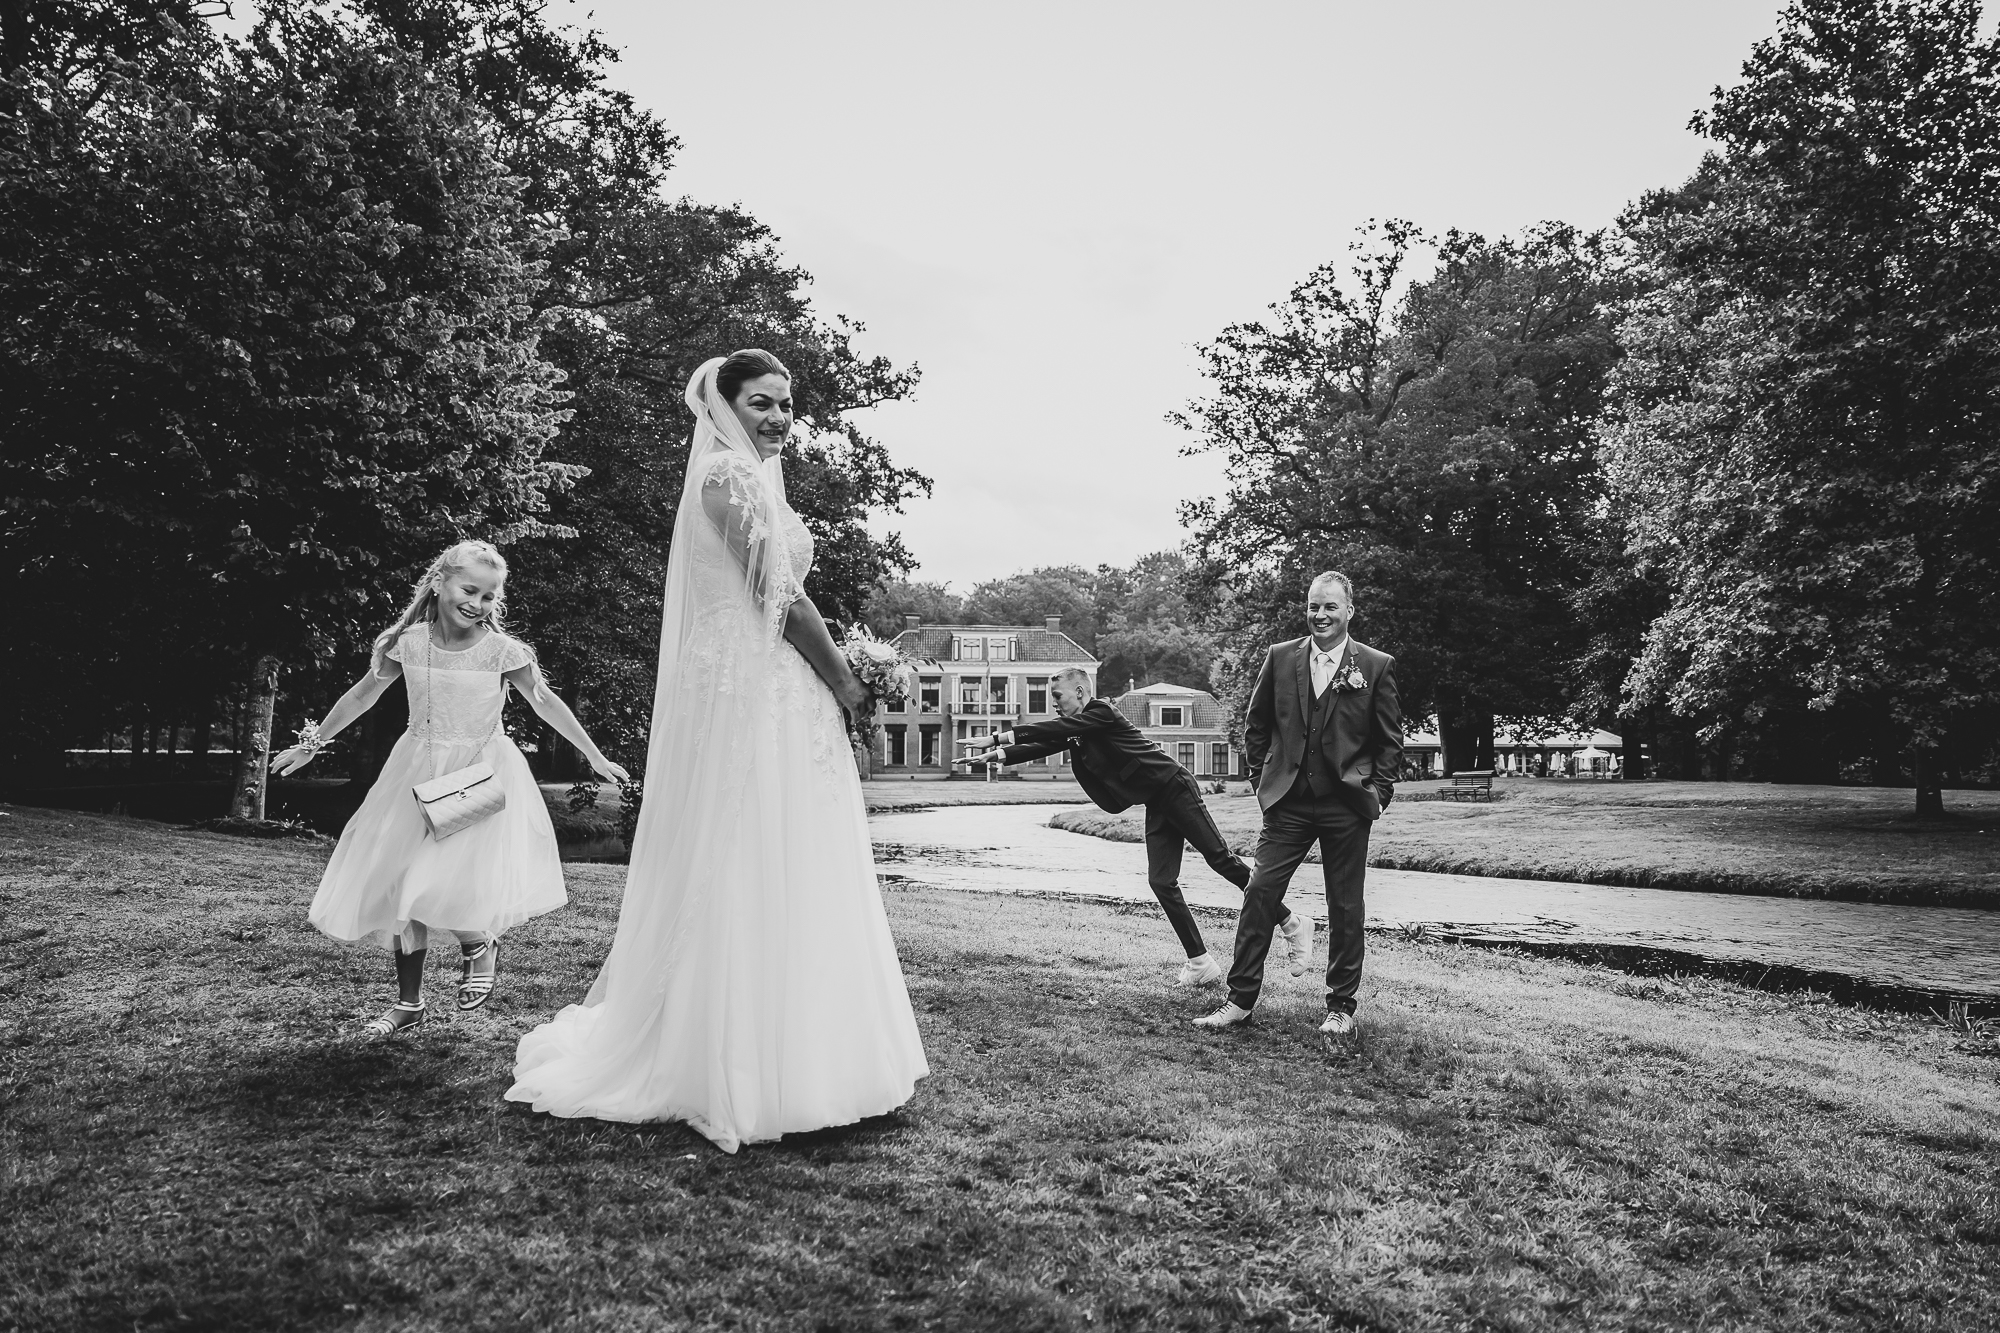 Fotoshoot huwelijk door huwelijksfotograaf Nickie Fotografie uit Dokkum, Friesland.